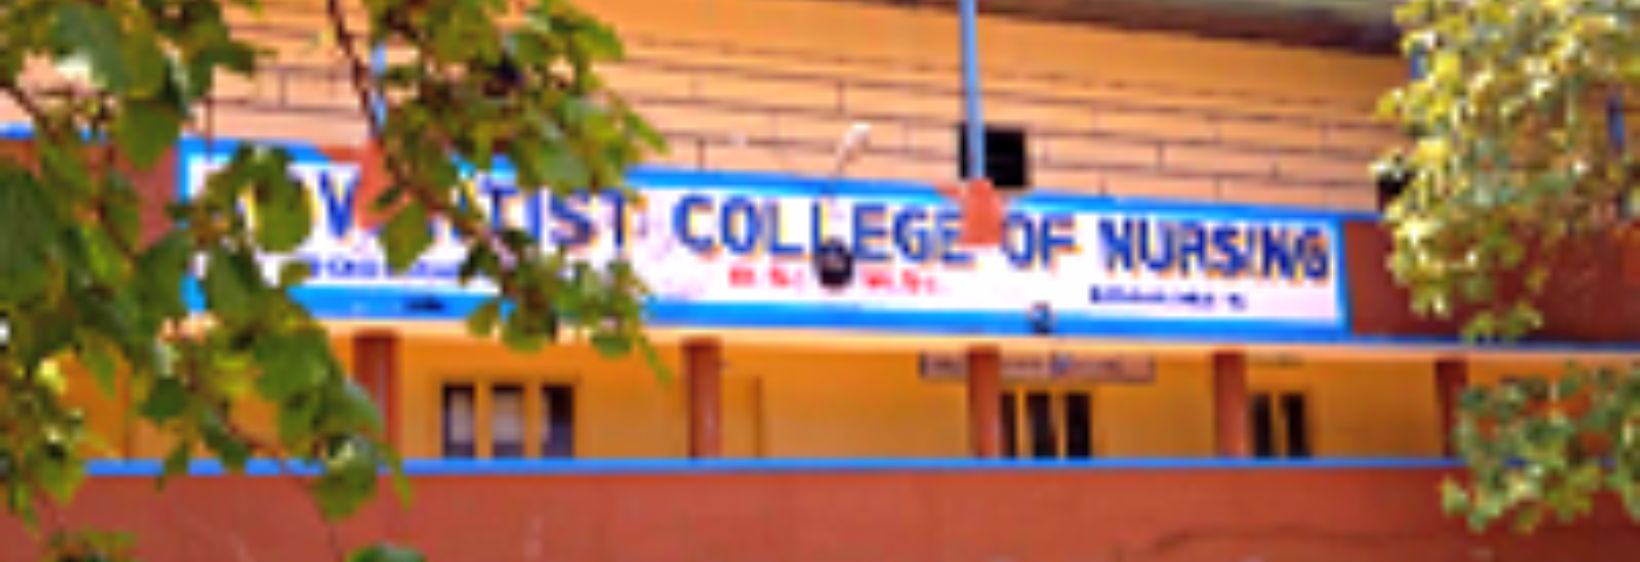 Adventist College of Nursing -  Bangalore